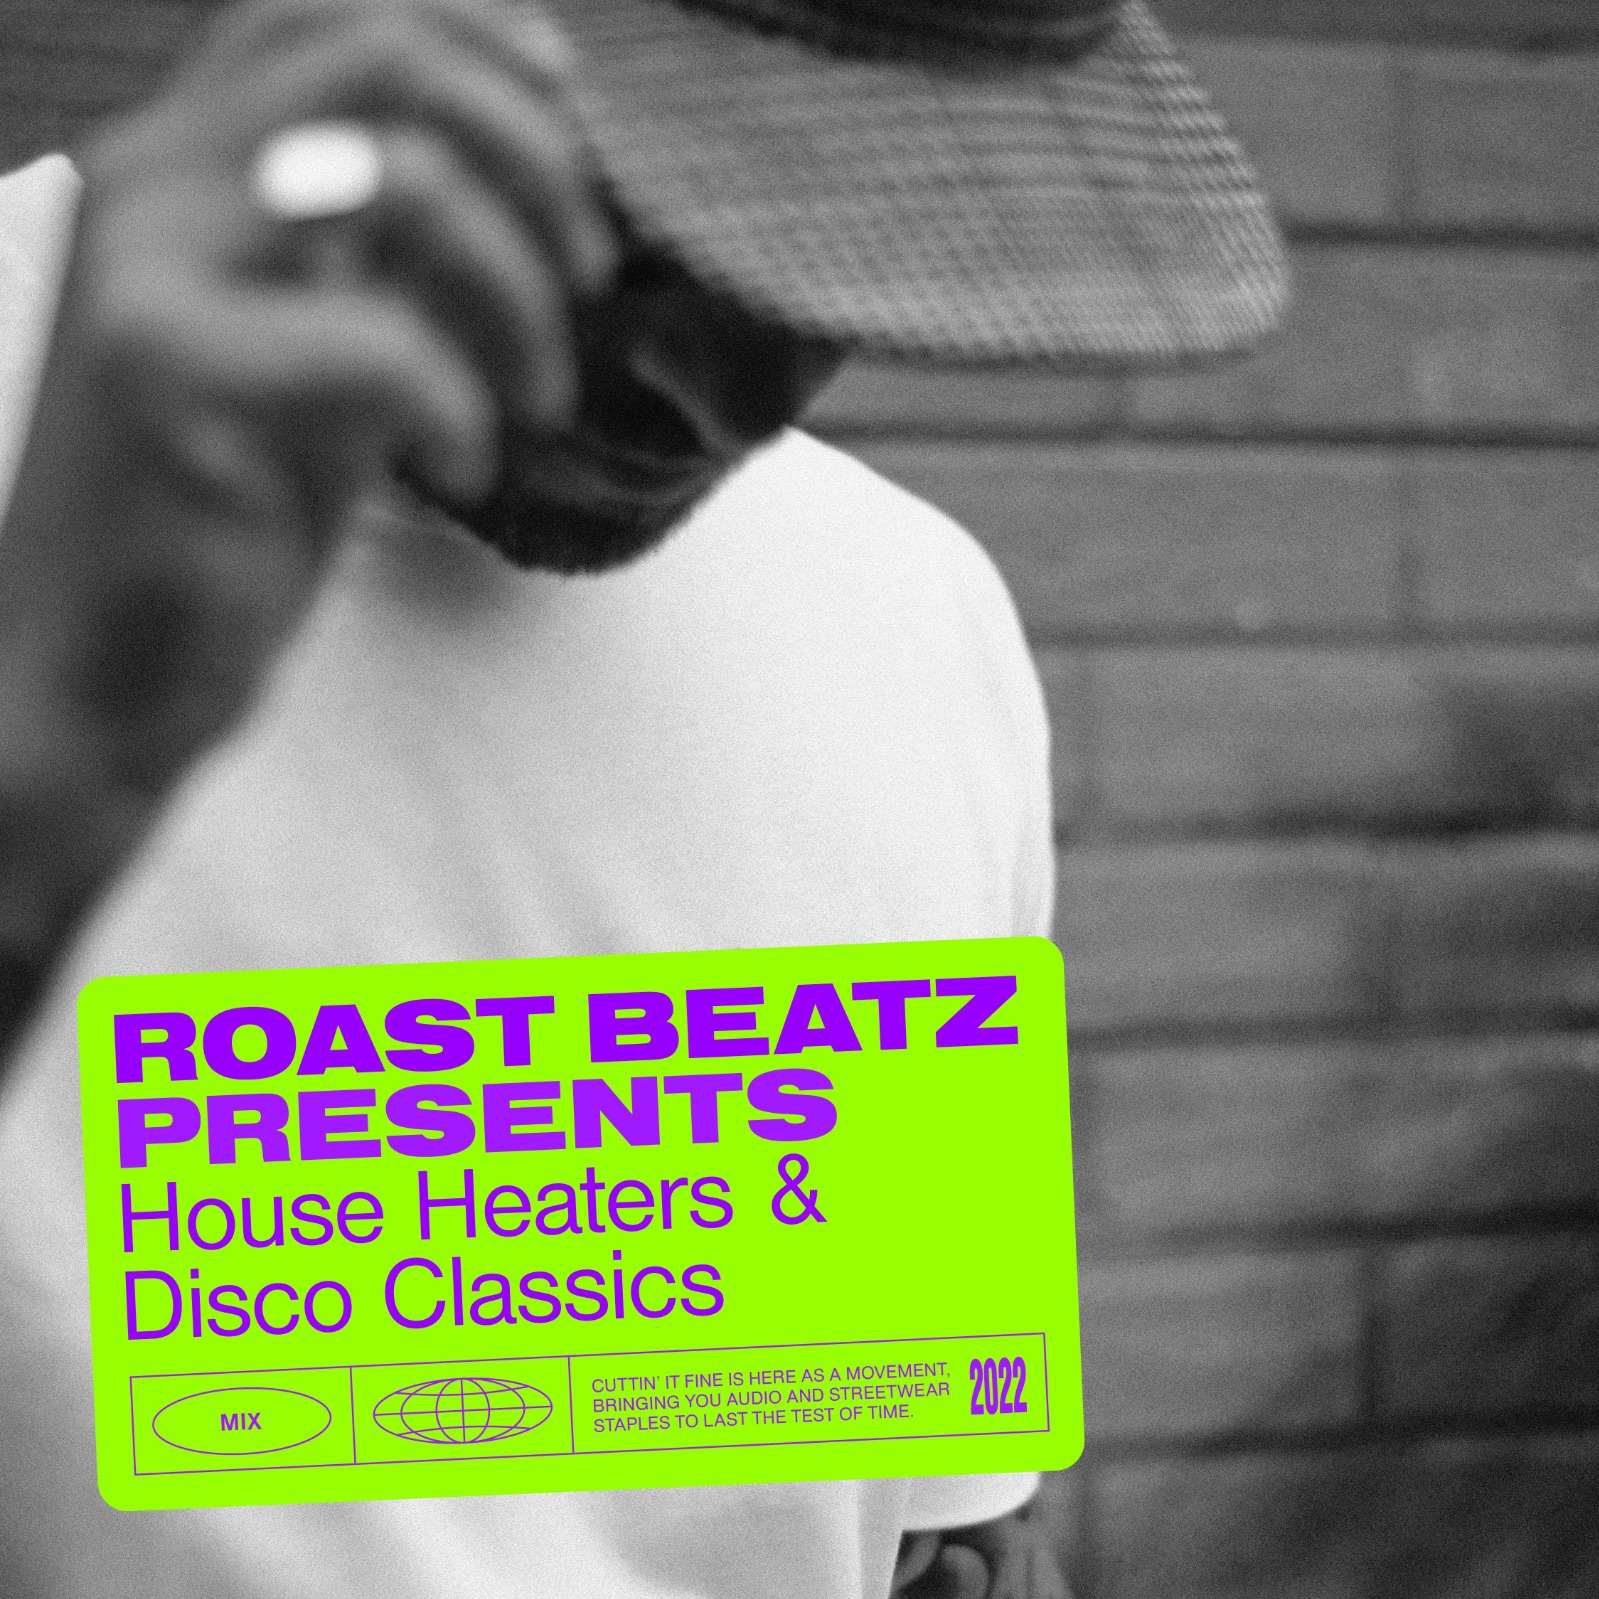 ဒေါင်းလုပ် Roast Beatz Presents House Heaters And Disco Classics